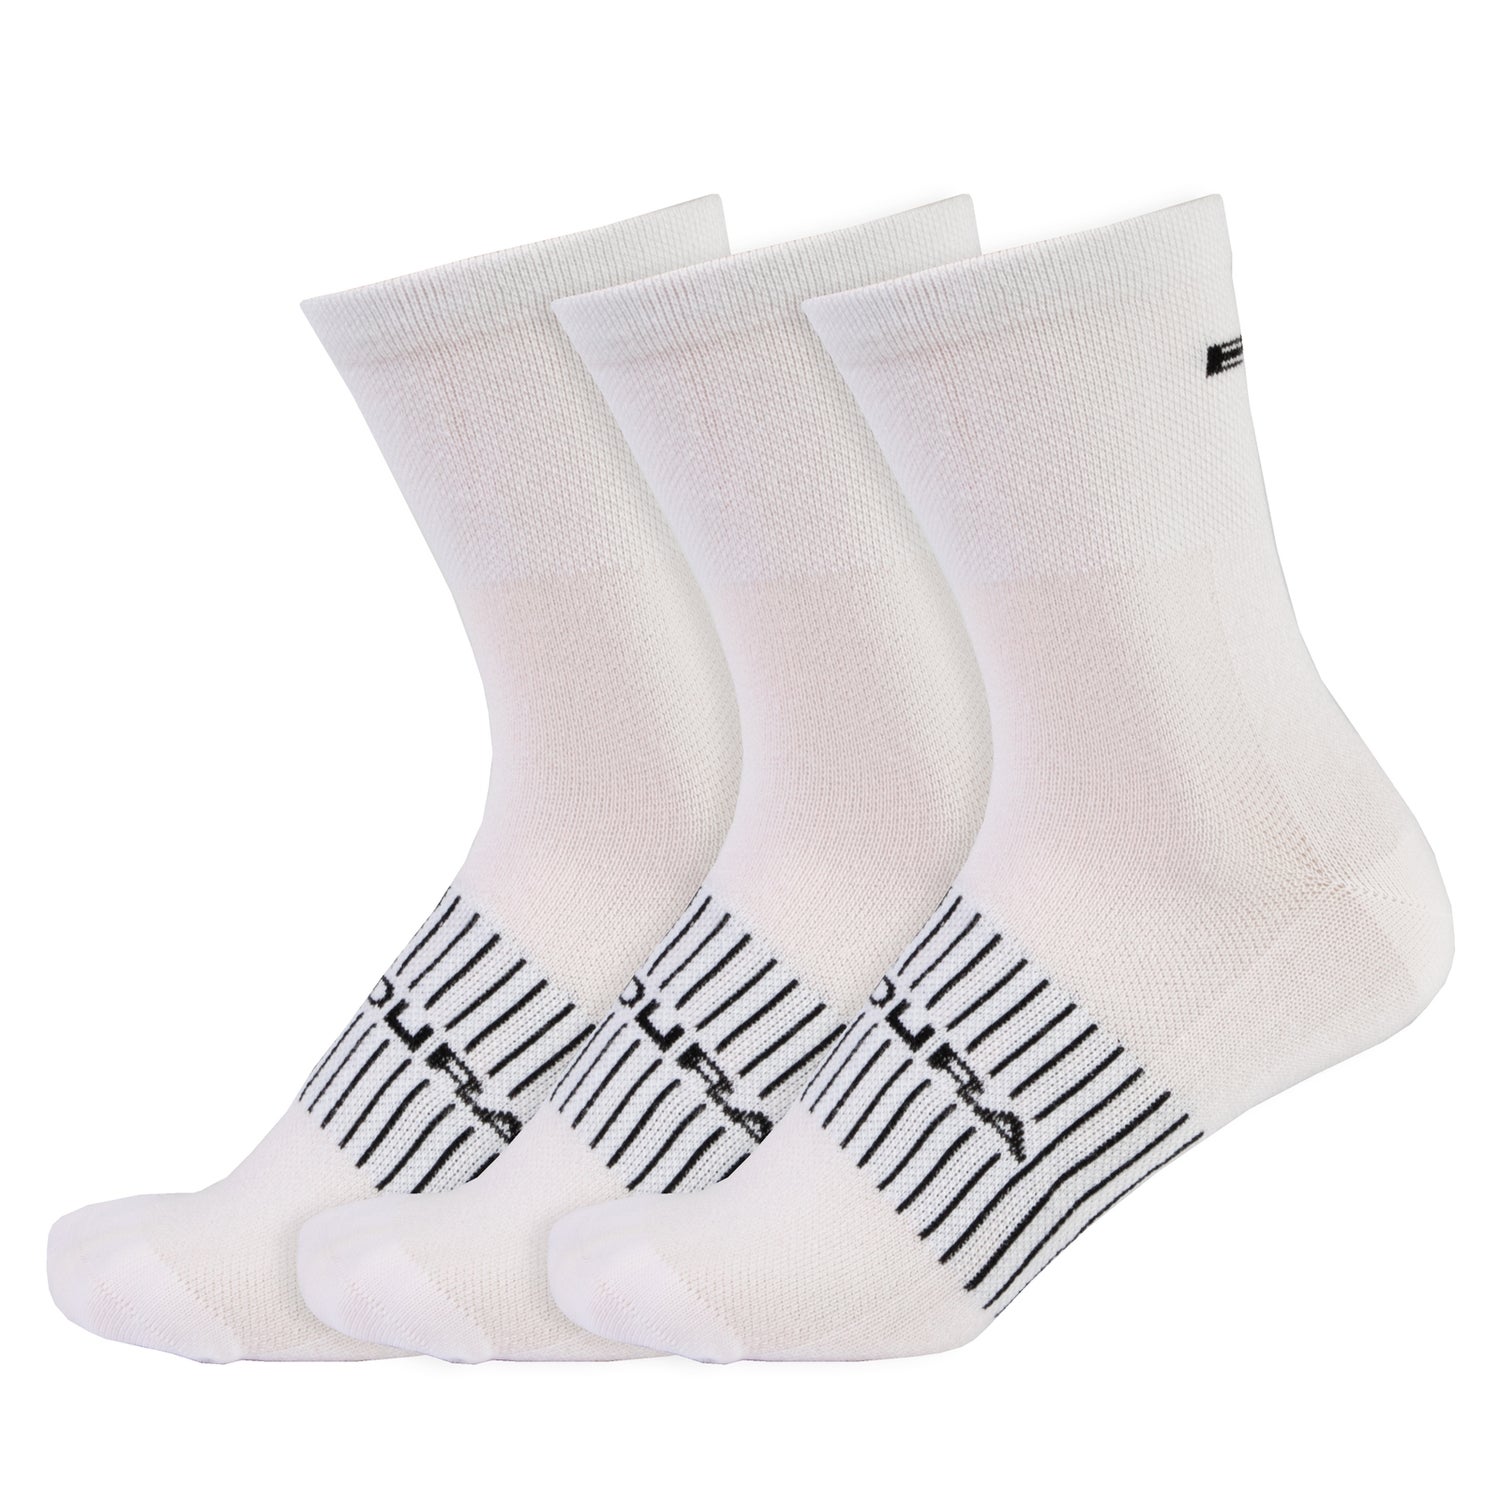 Men's Coolmax® Race Sock (Triple Pack) - White